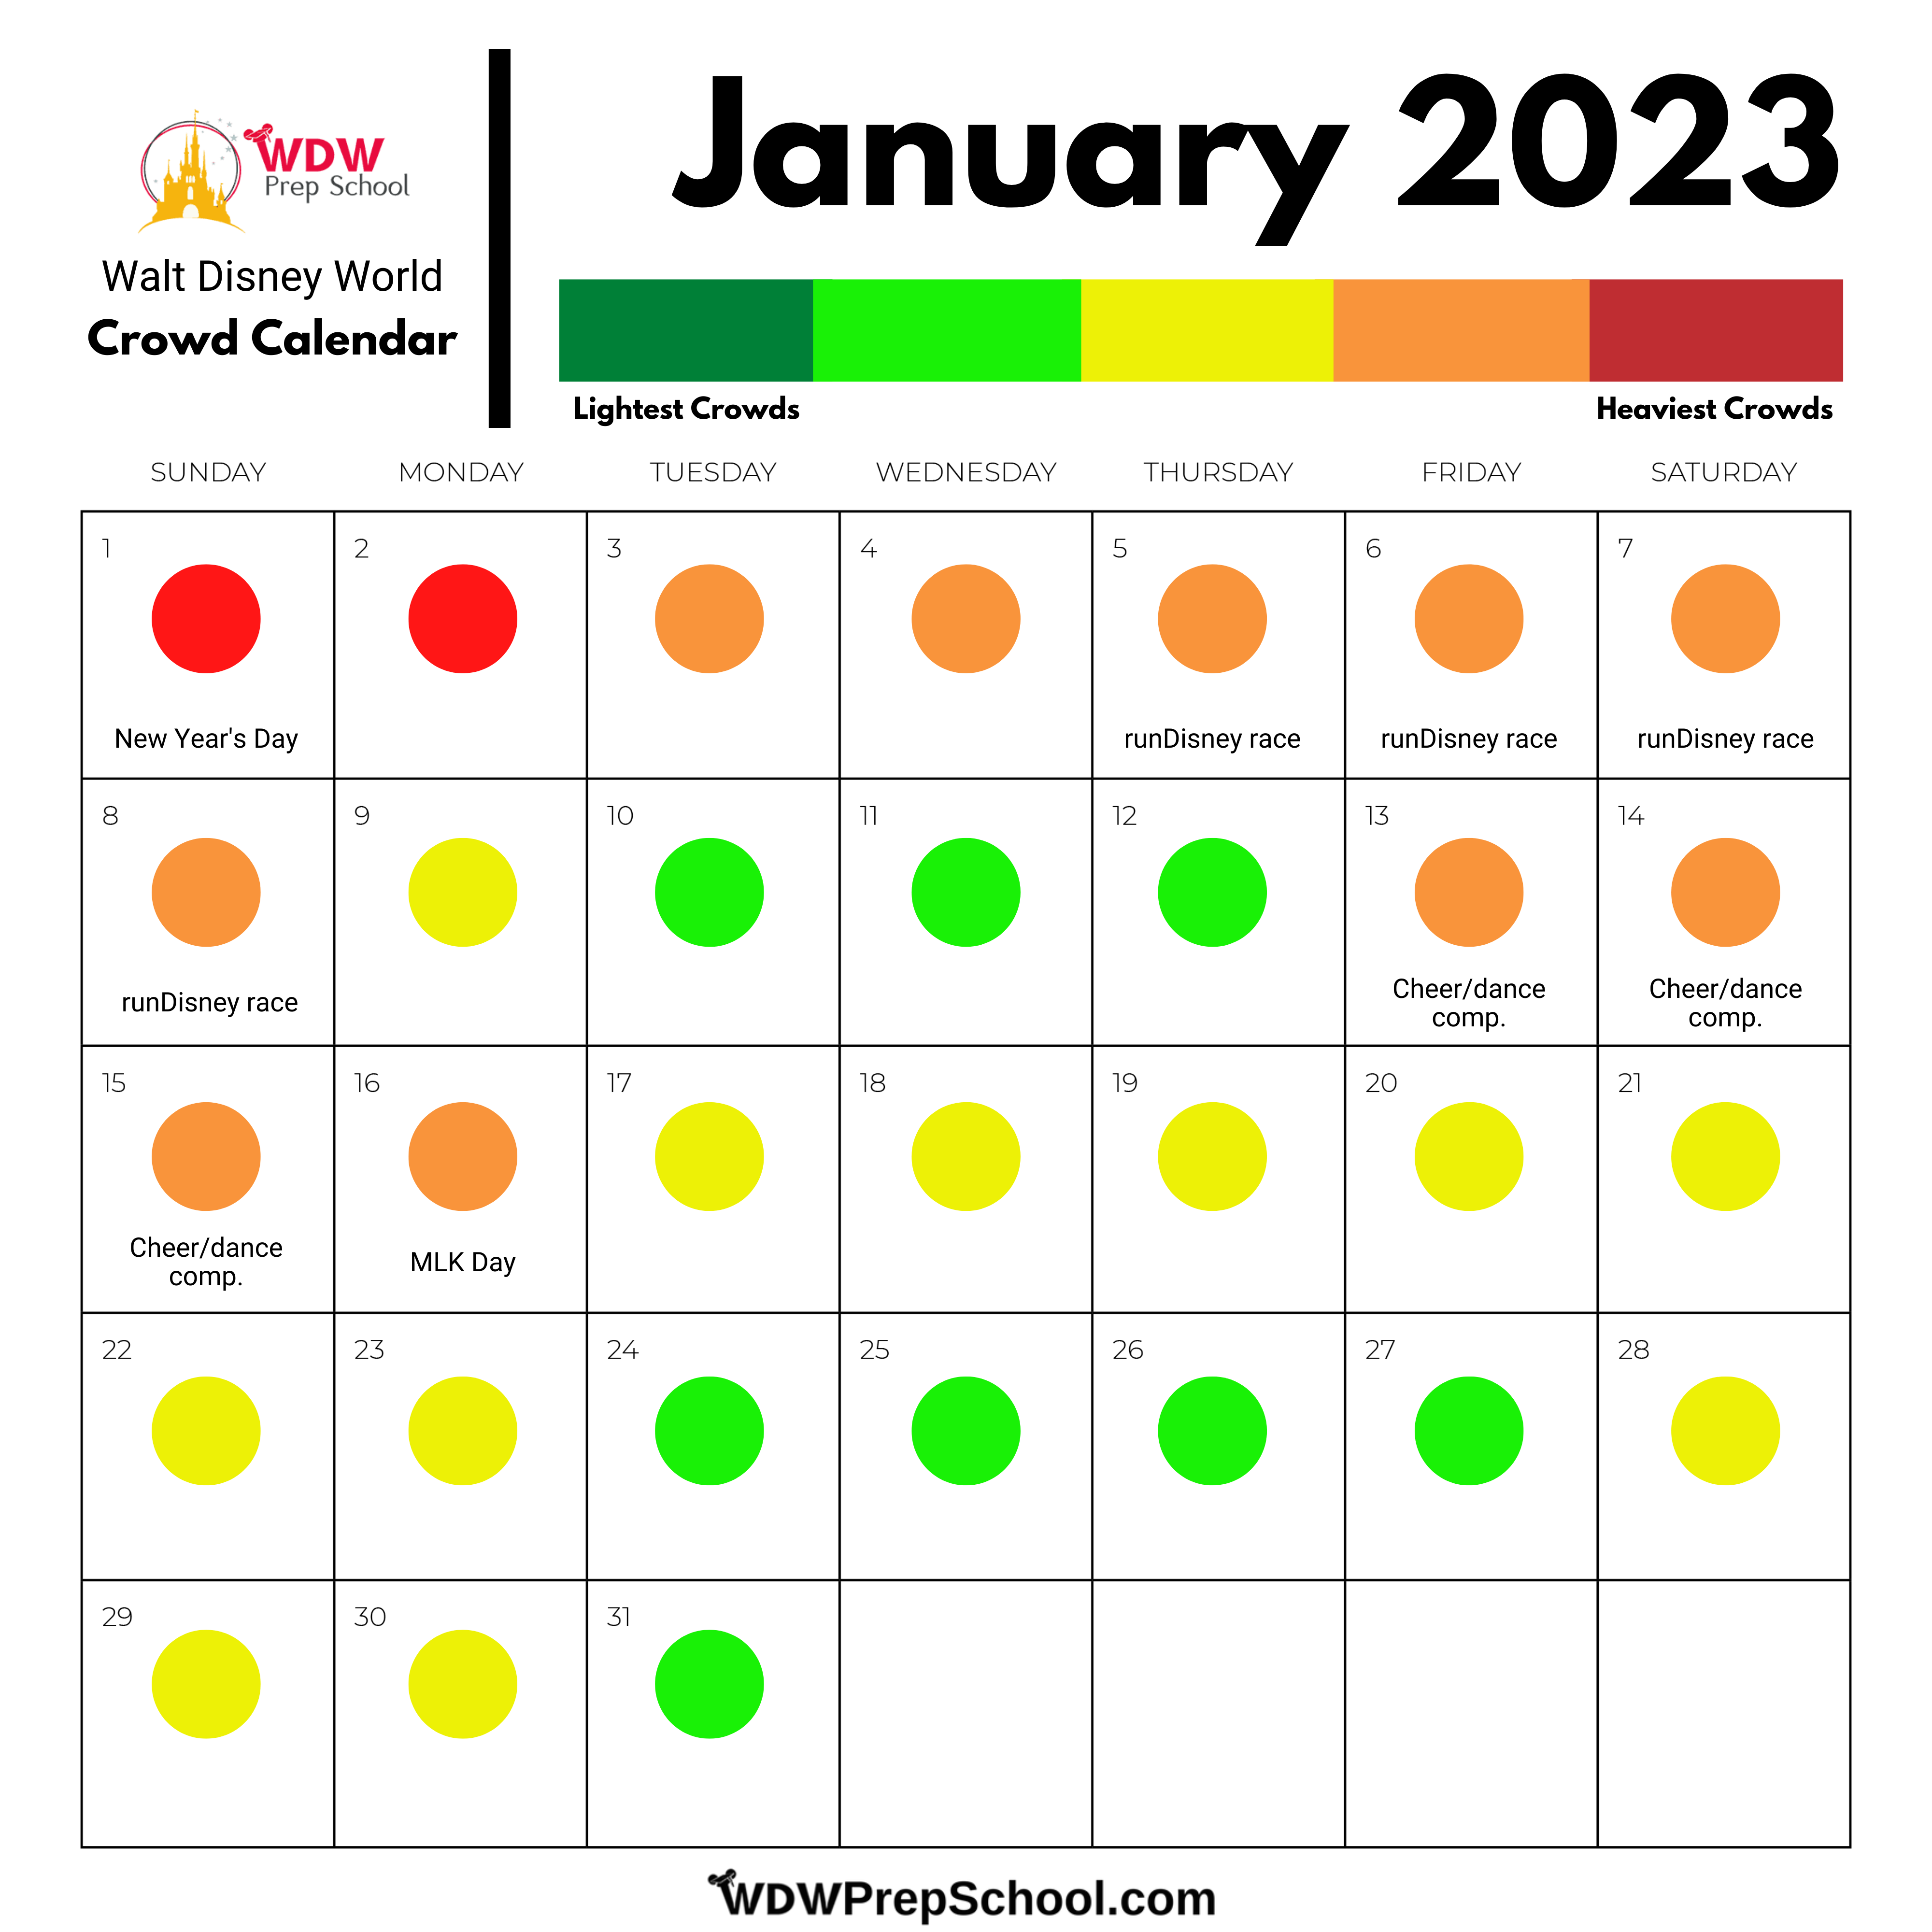 disney-crowd-calendar-2023-get-calendar-2023-update